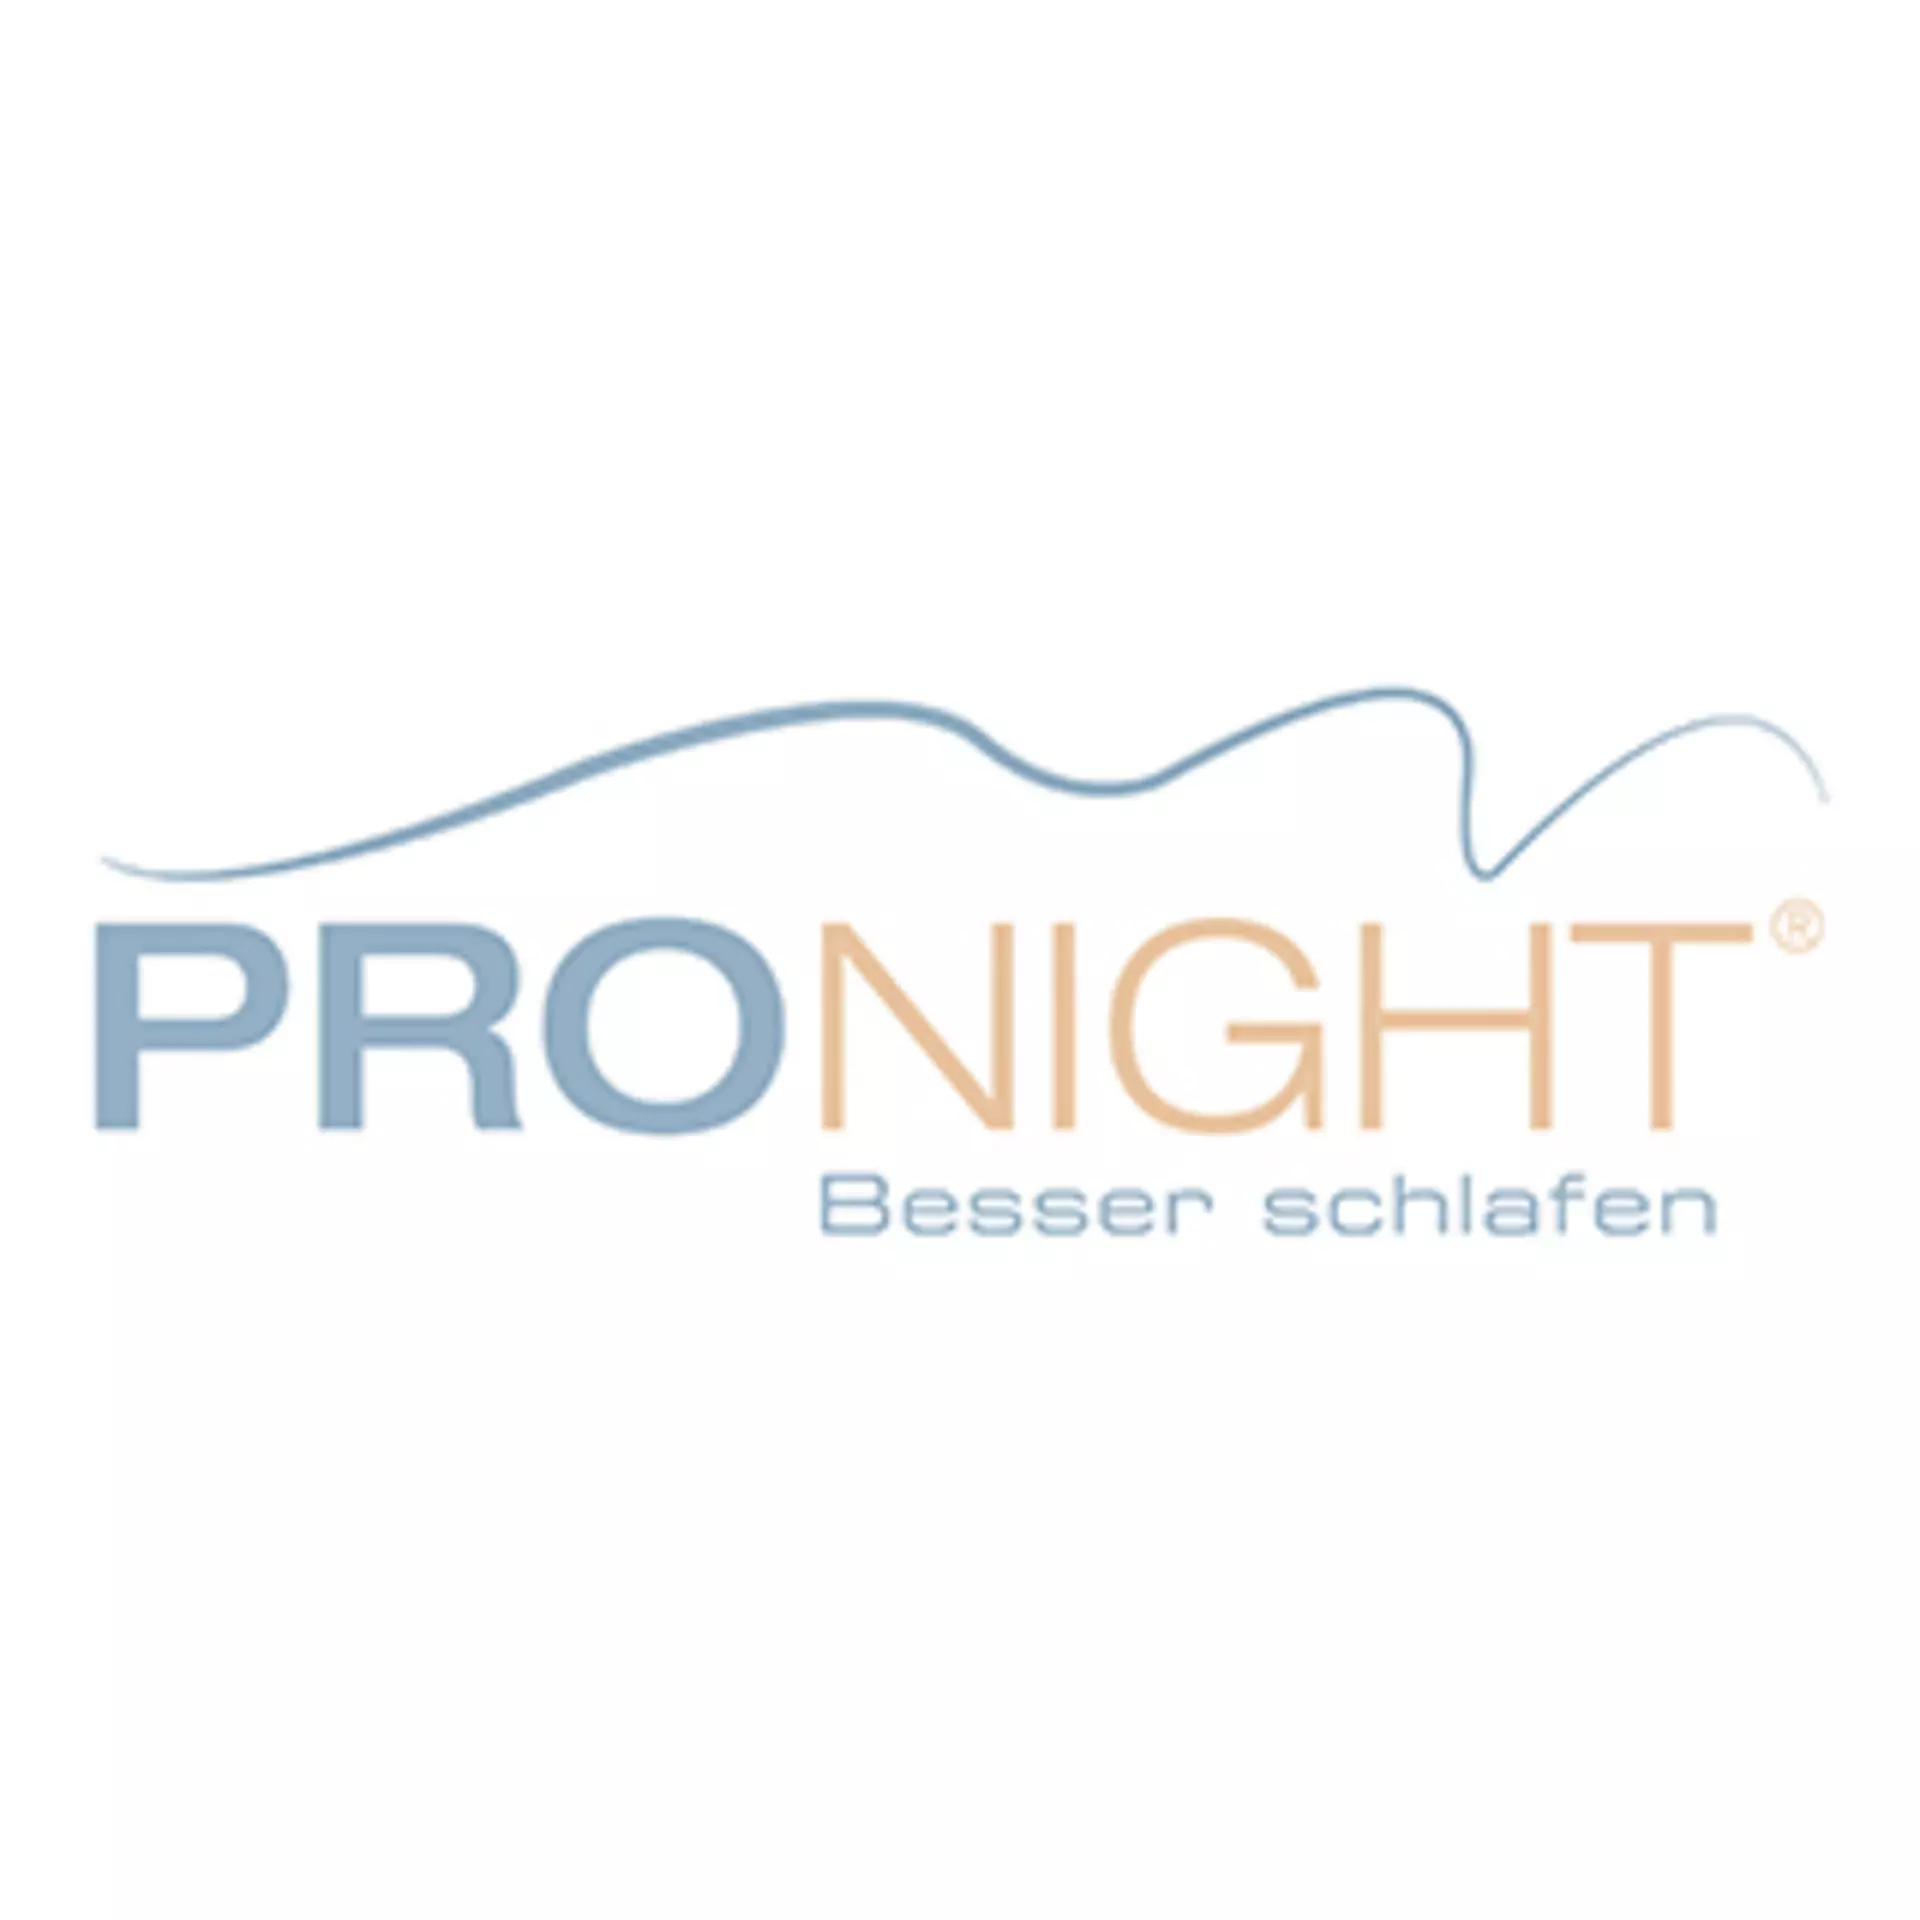 Logo "PRO NIGHT - Besser schlafen"